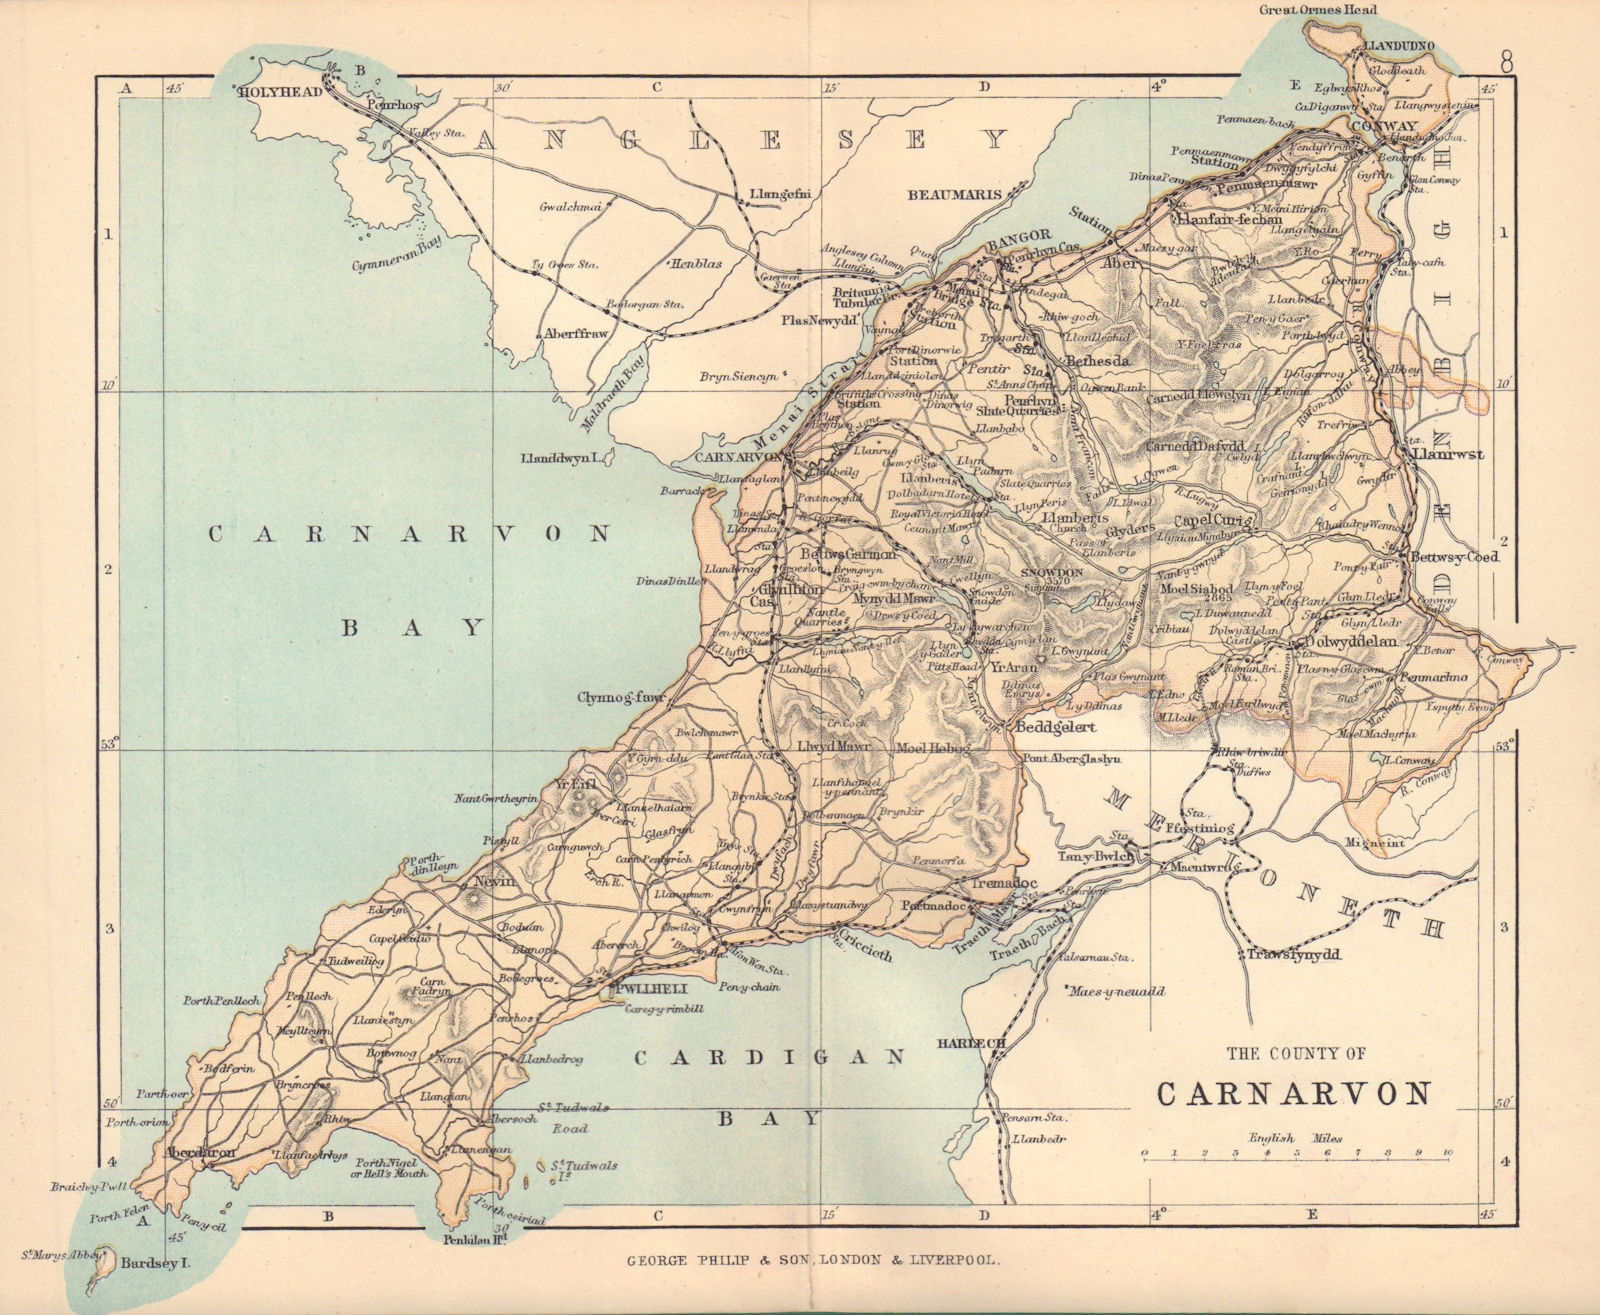 CAERNARFONSHIRE "County of Carnarvon" Bangor Conwy Wales BARTHOLOMEW 1885 map